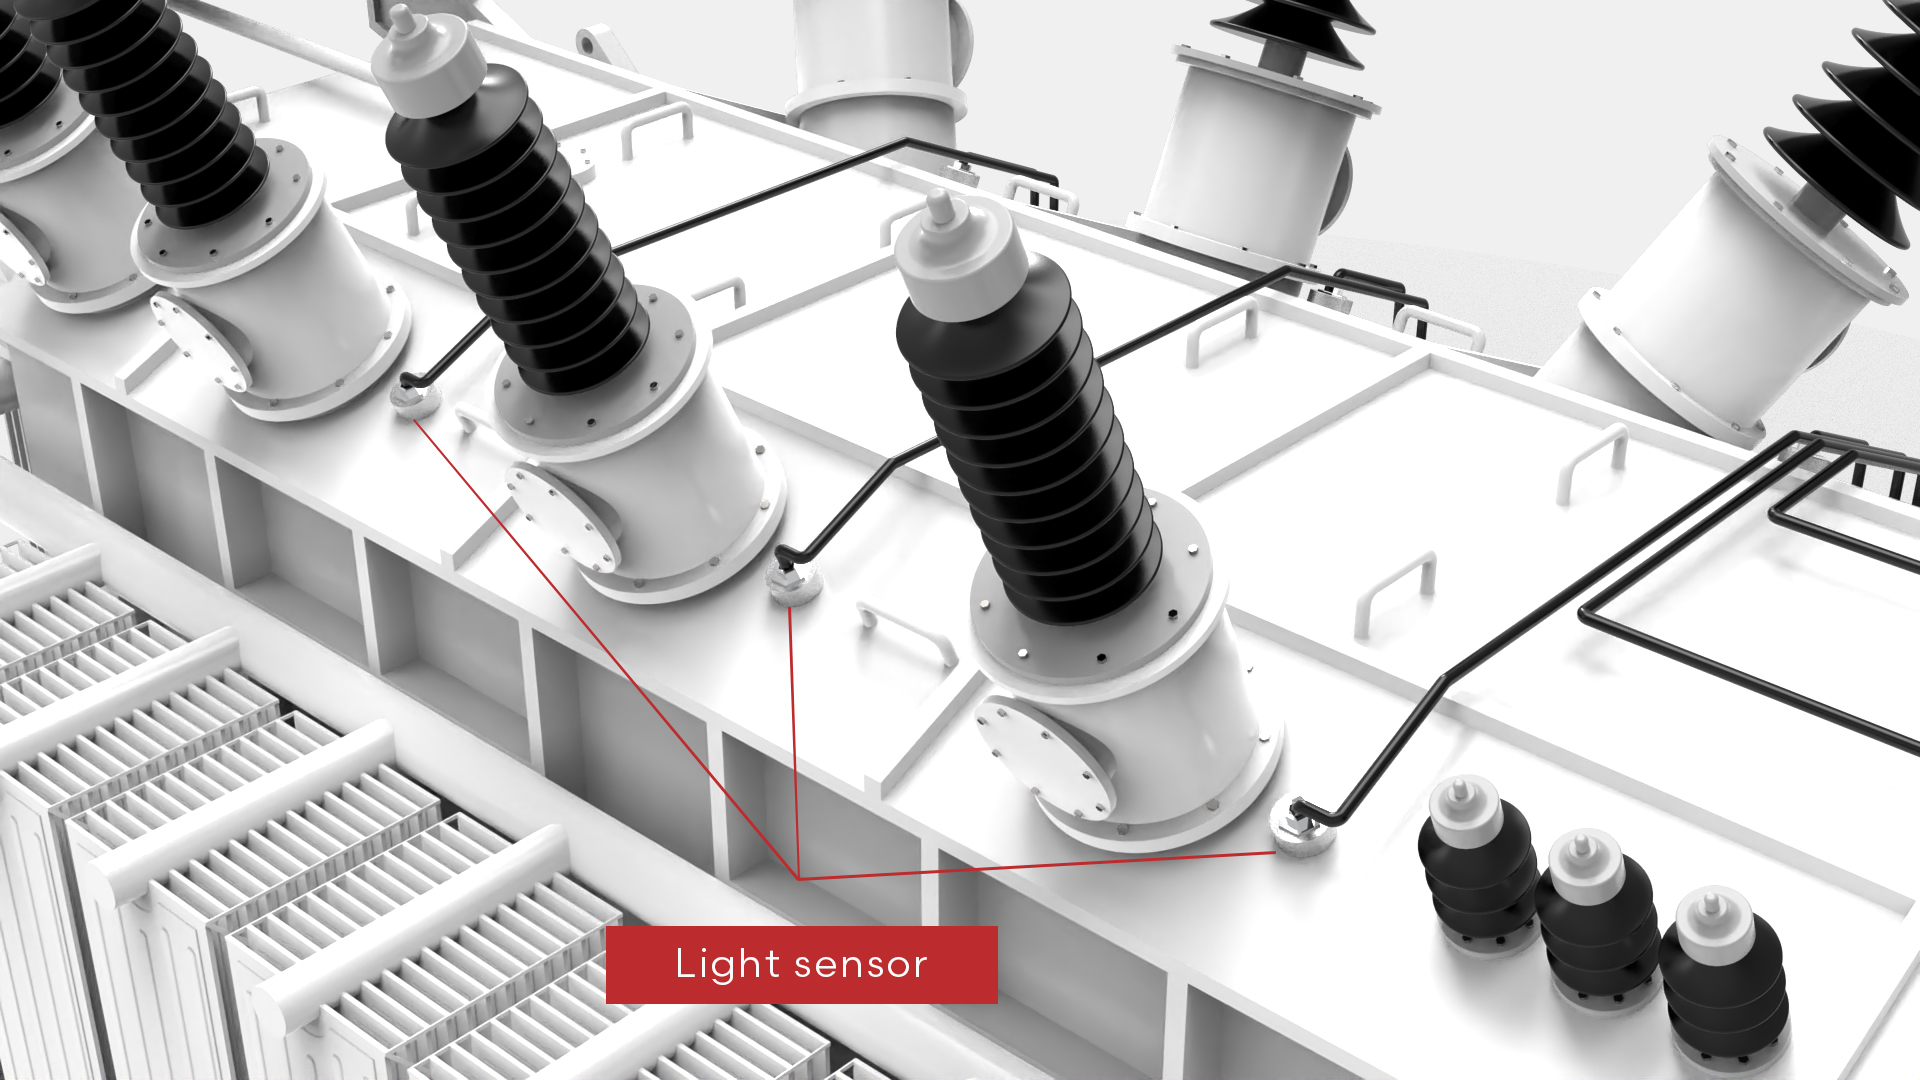 Light sensor installed on a transformer